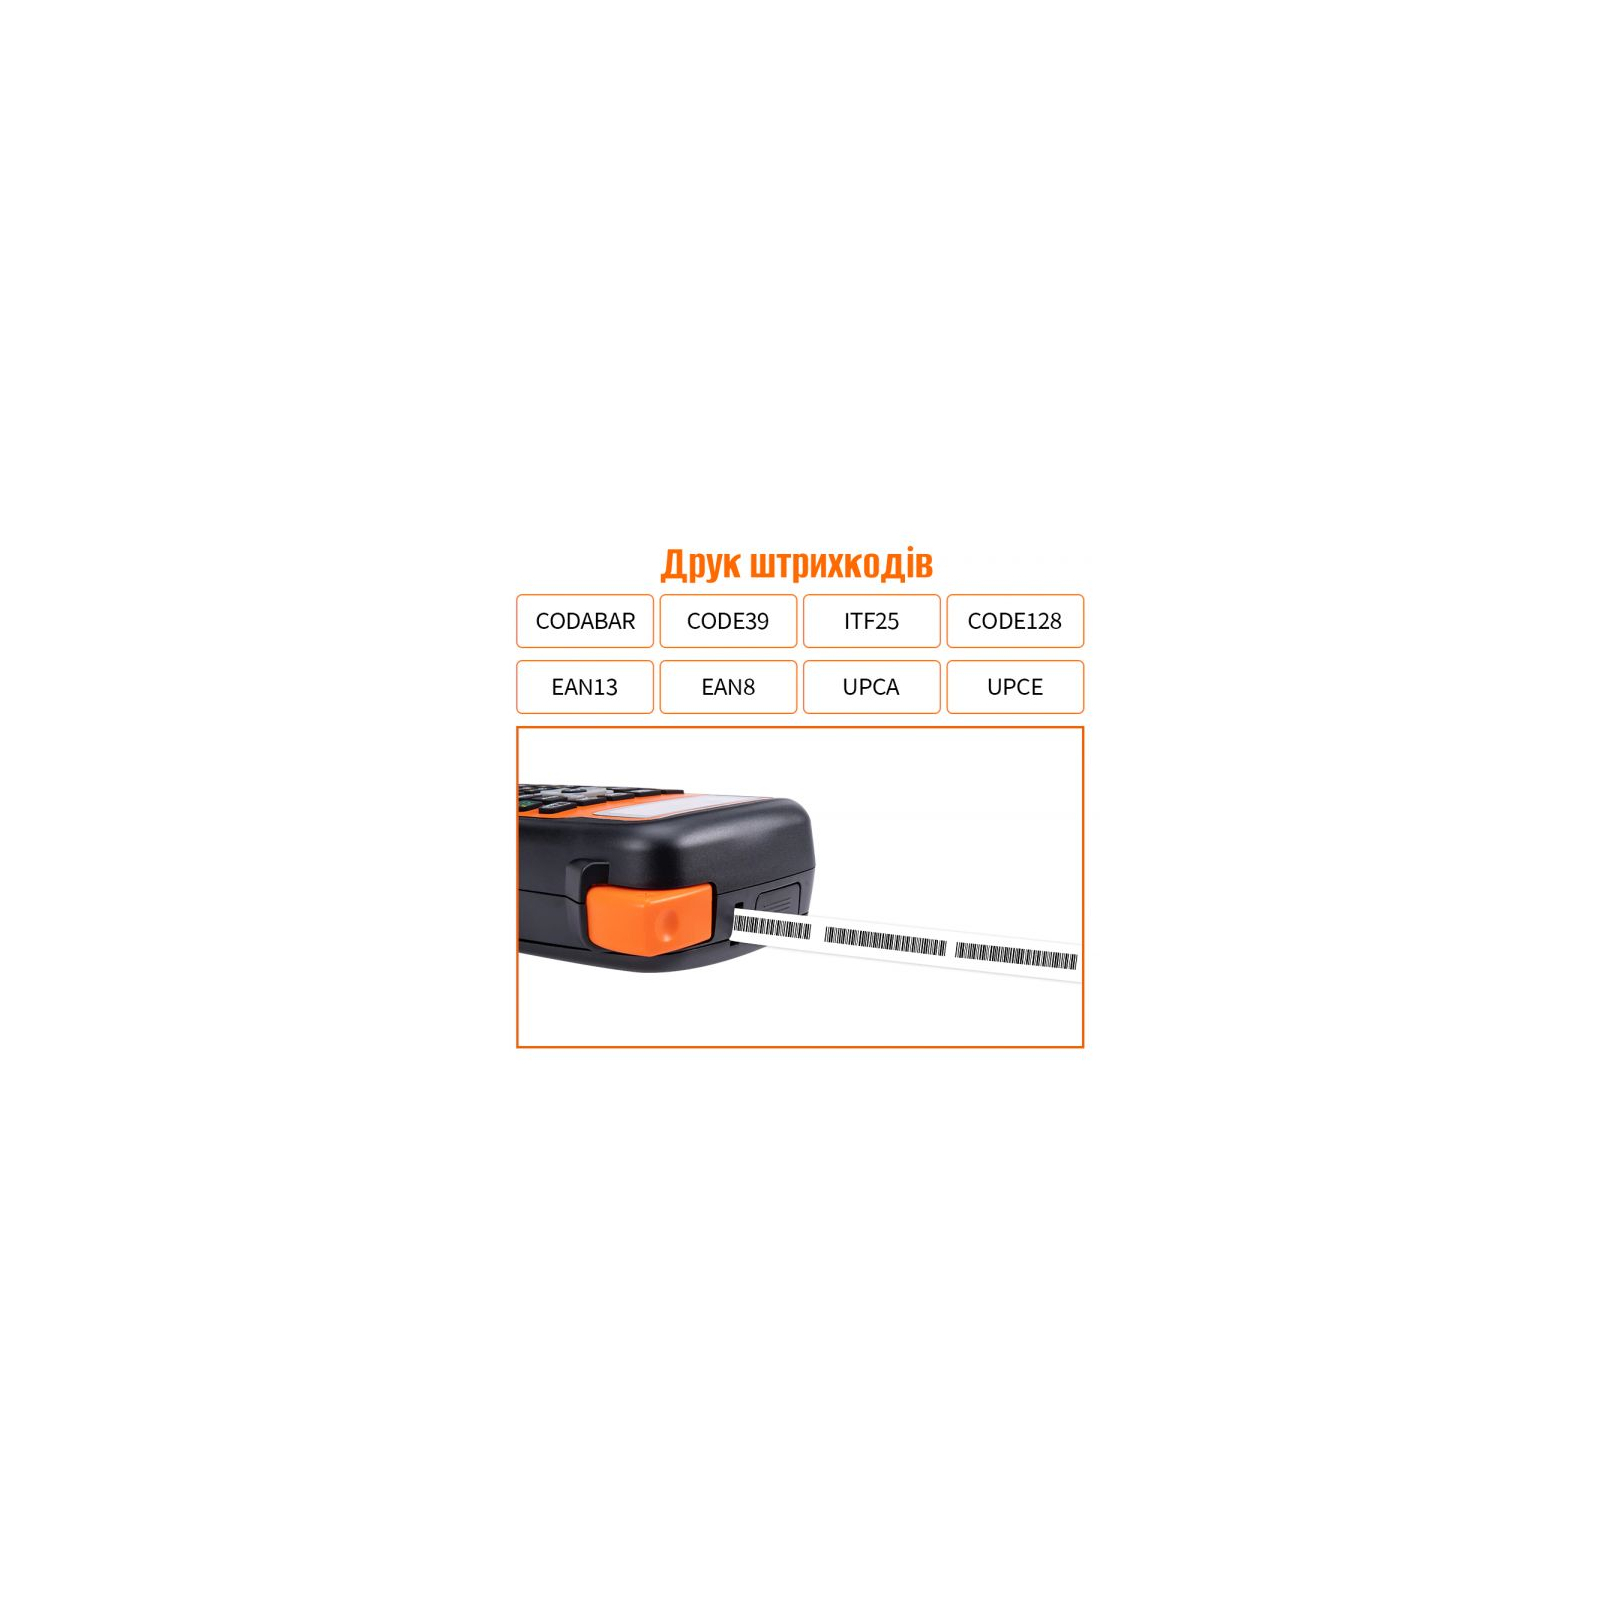 Принтер етикеток UKRMARK E1000 Pro Orange (UE1000OR) зображення 3